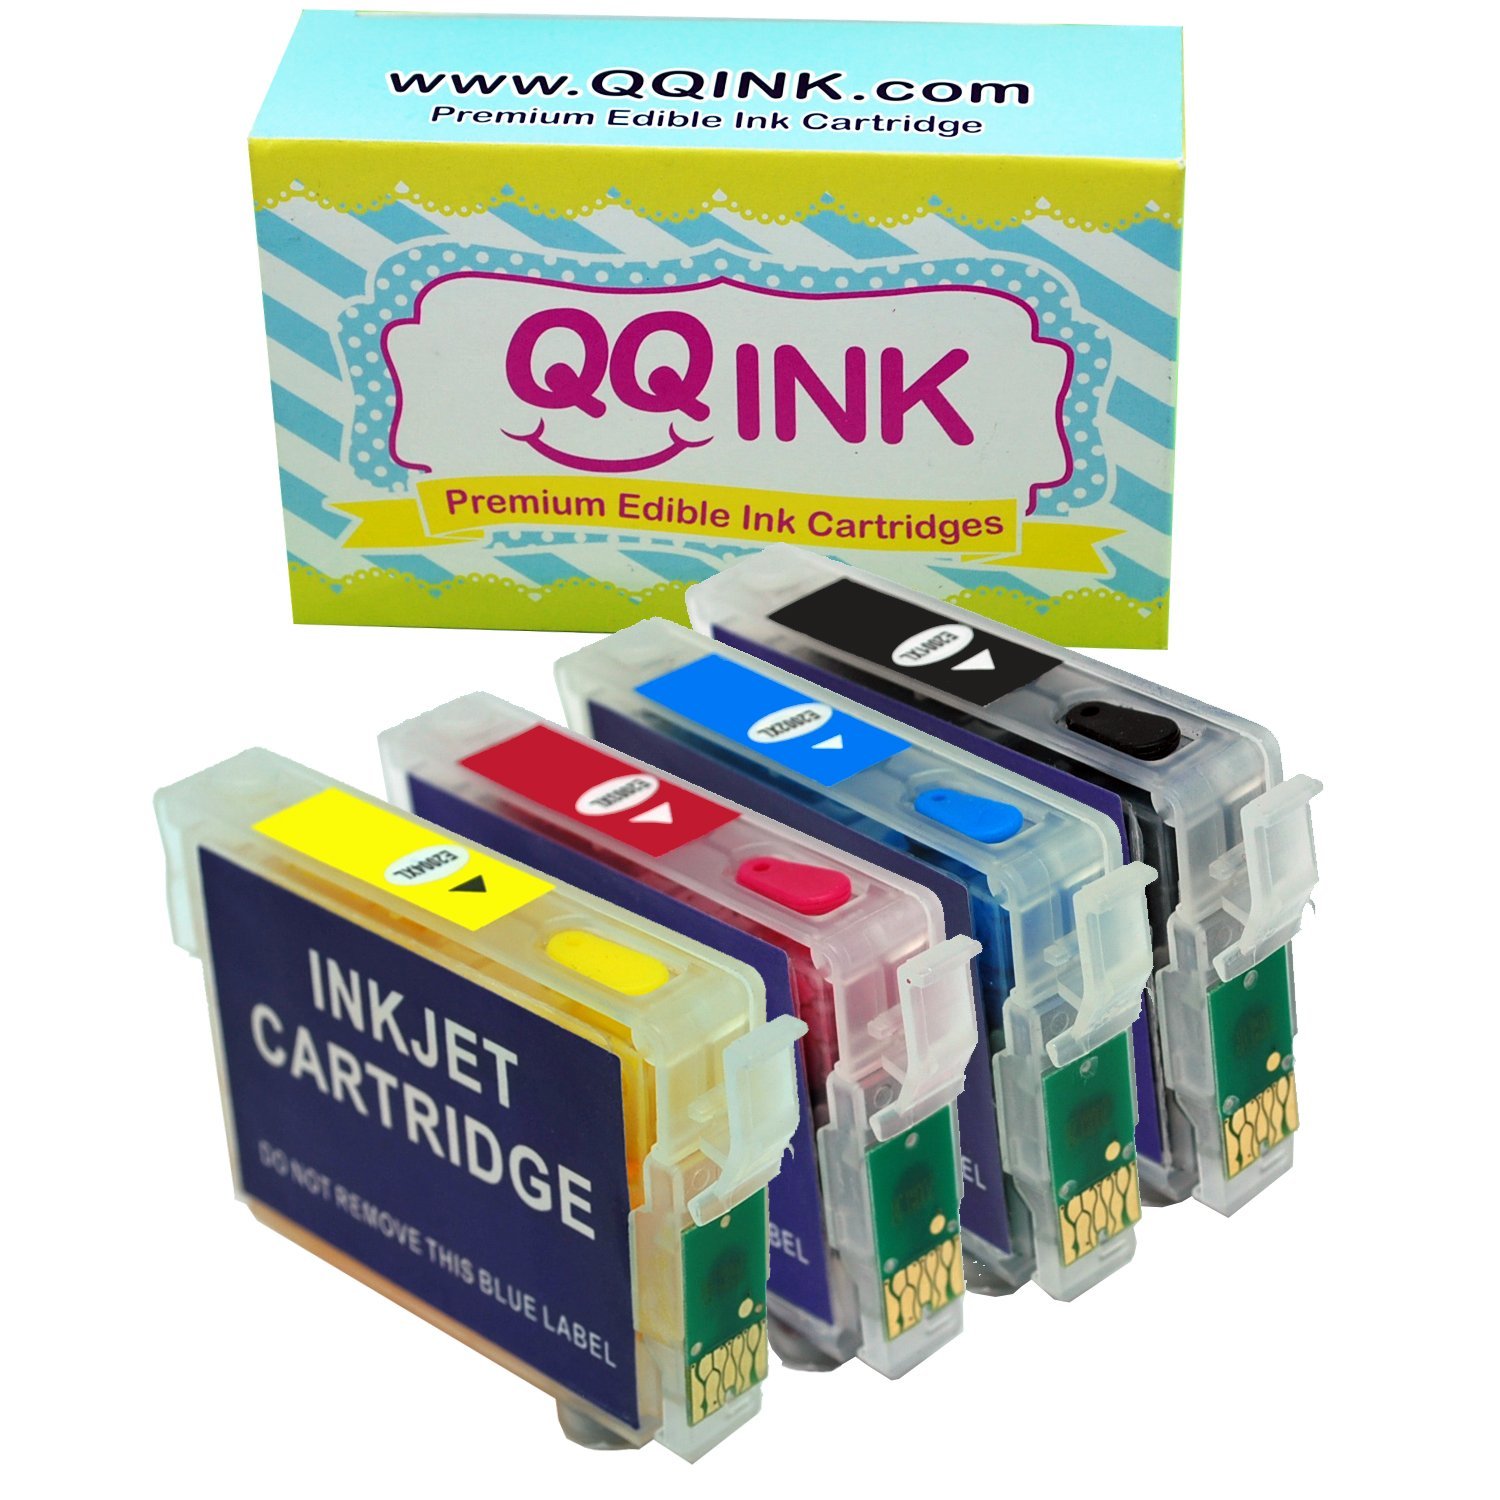 Premium Refillable Edible Ink Cartridge For Epson T200 Epson Xp 200 Xp 300 Xp 310 Xp 400 Xp 410 8199